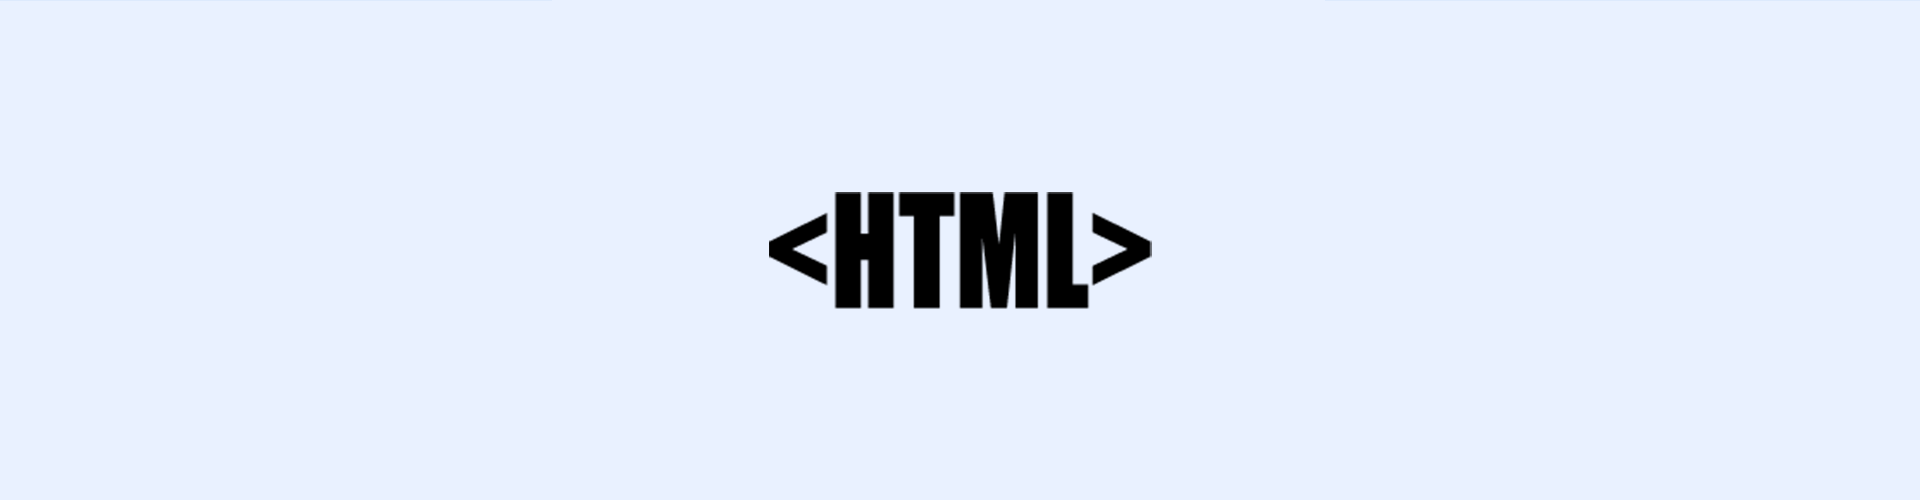 Hostarex blog: HTML nədir?